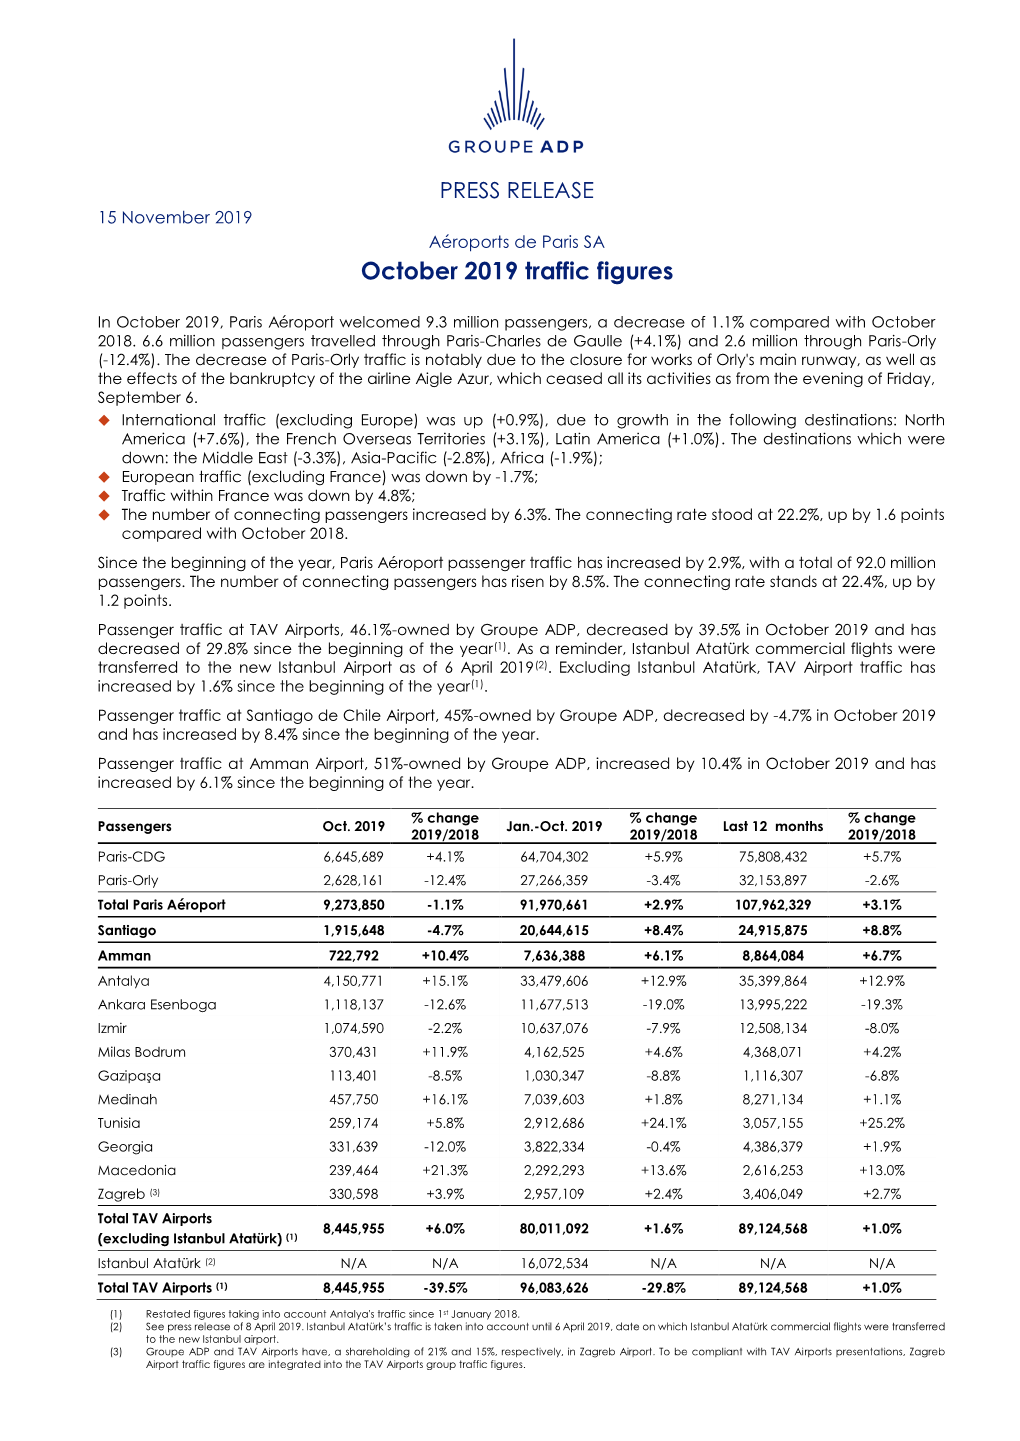 PRESS RELEASE 15 November 2019 Aéroports De Paris SA October 2019 Traffic Figures